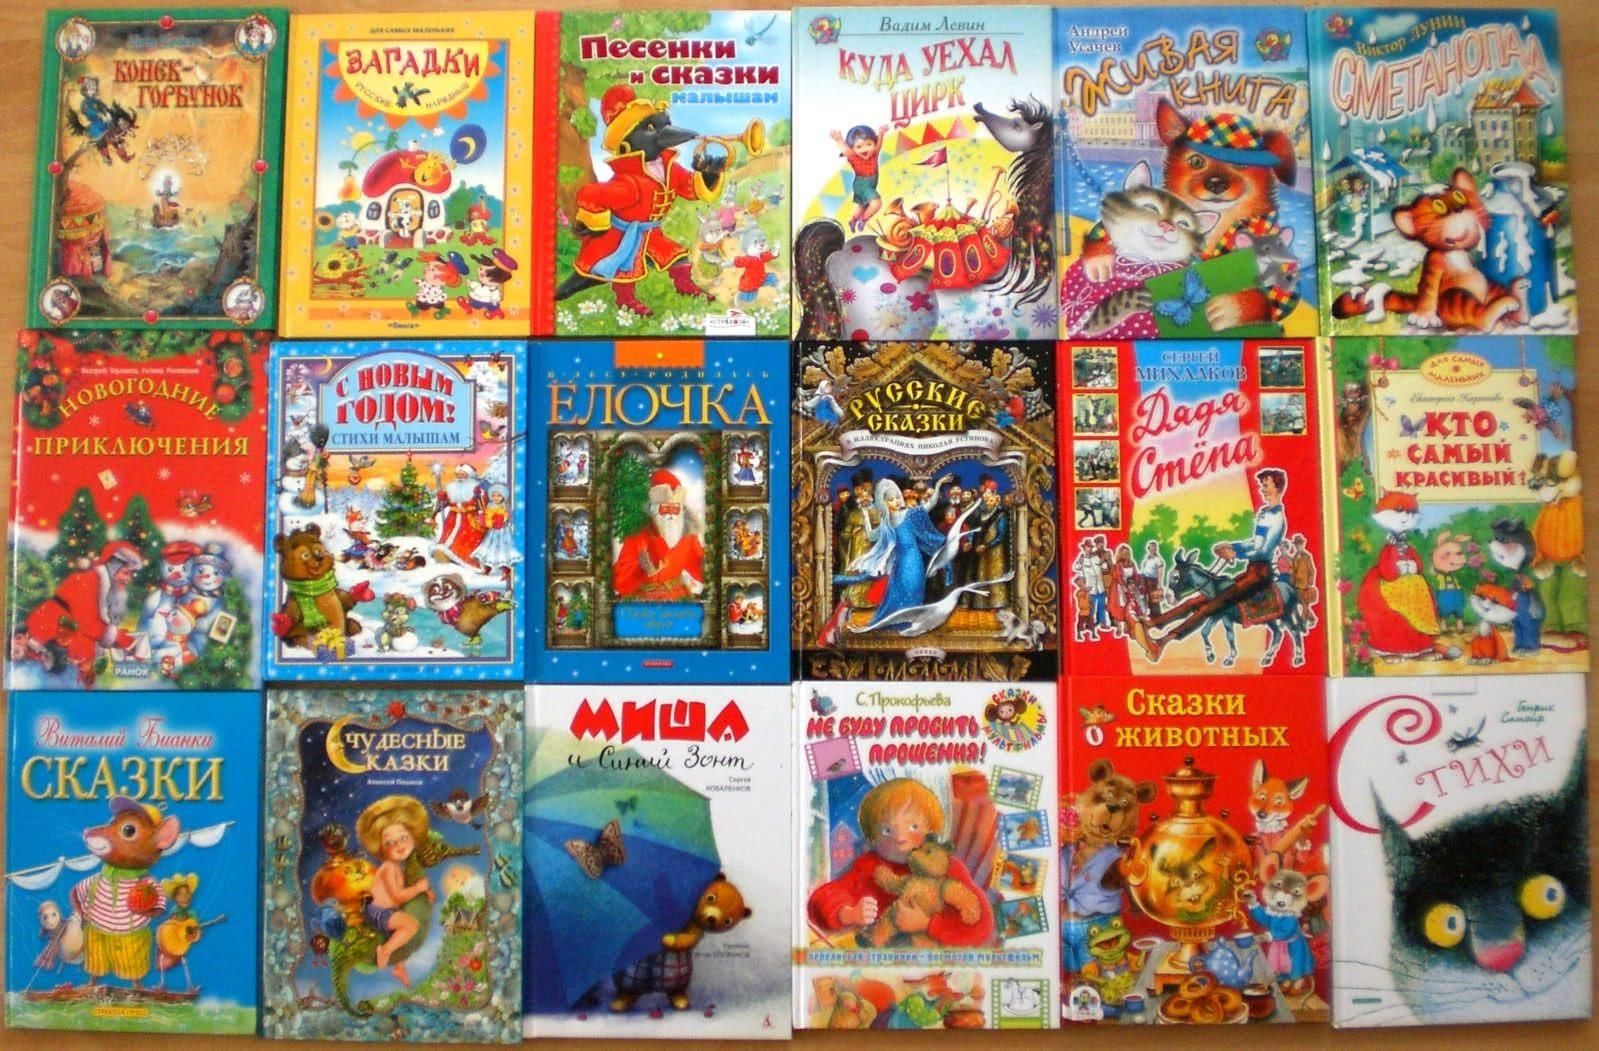 Сказки читать список. Детские книги. Книга сказок для детей. Детский книжки. Художественная литература для дошкольников.